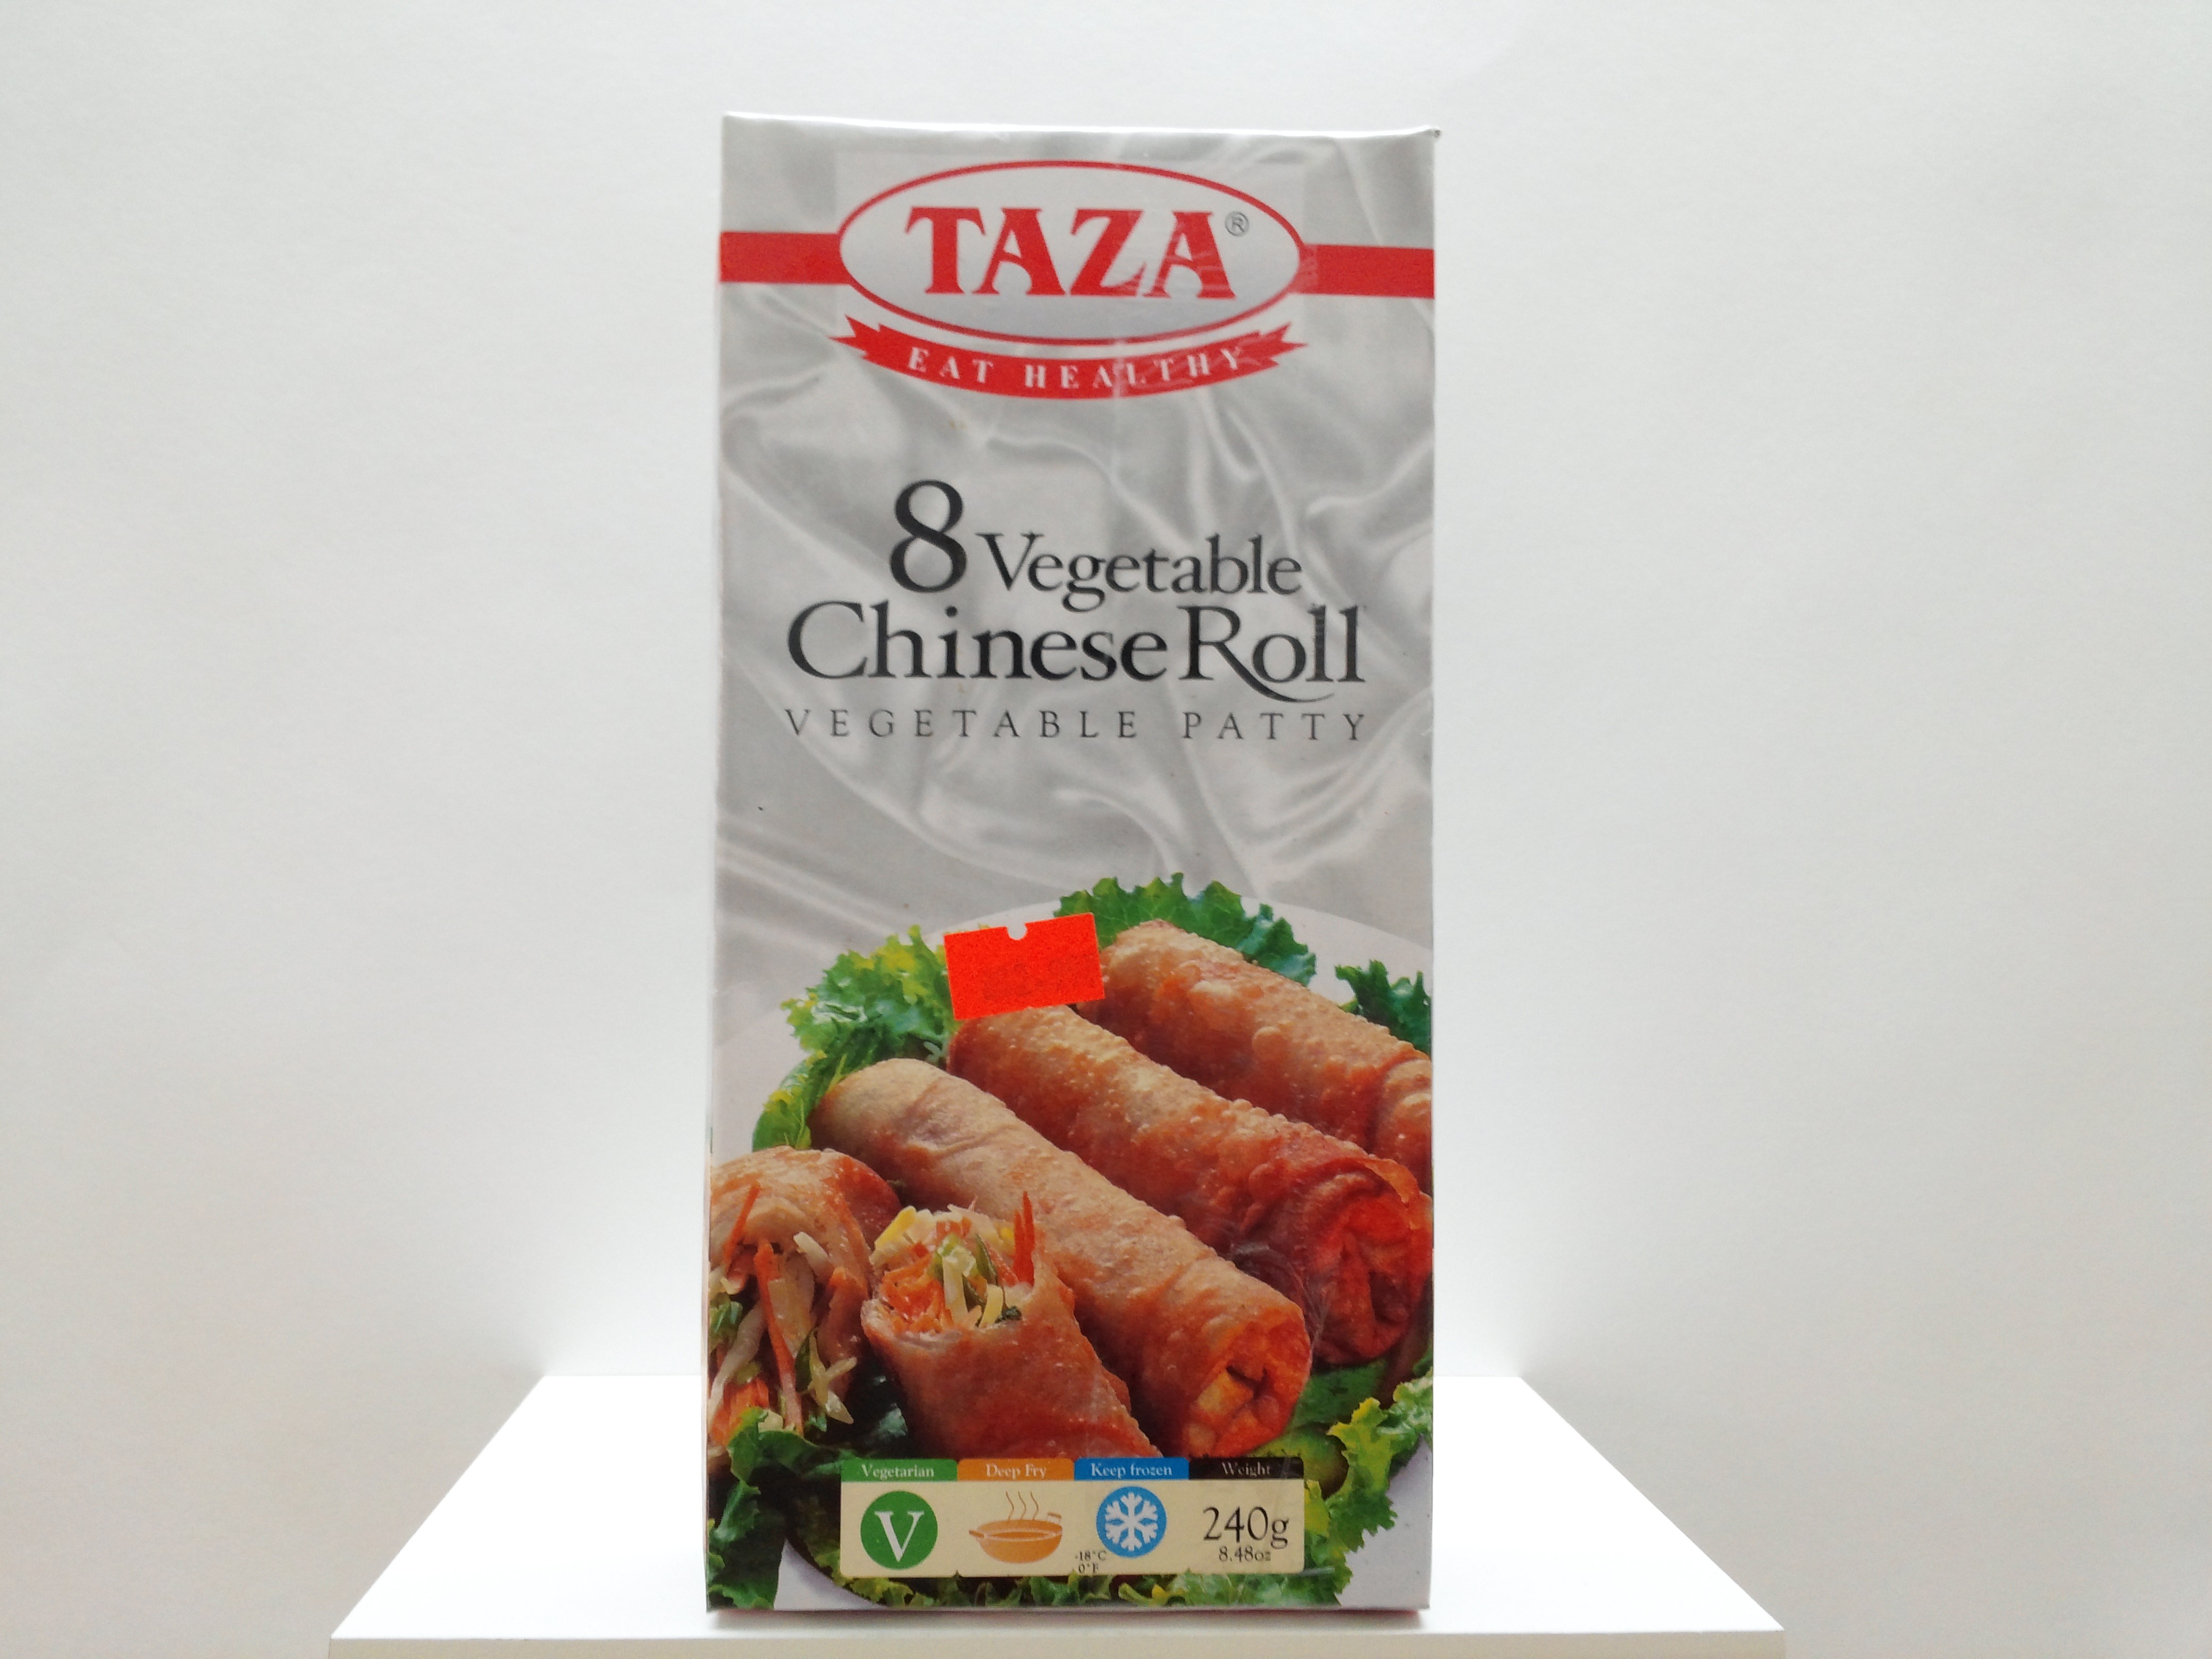 Taza veg Chinese Roll 8 pcs 8.48 oz